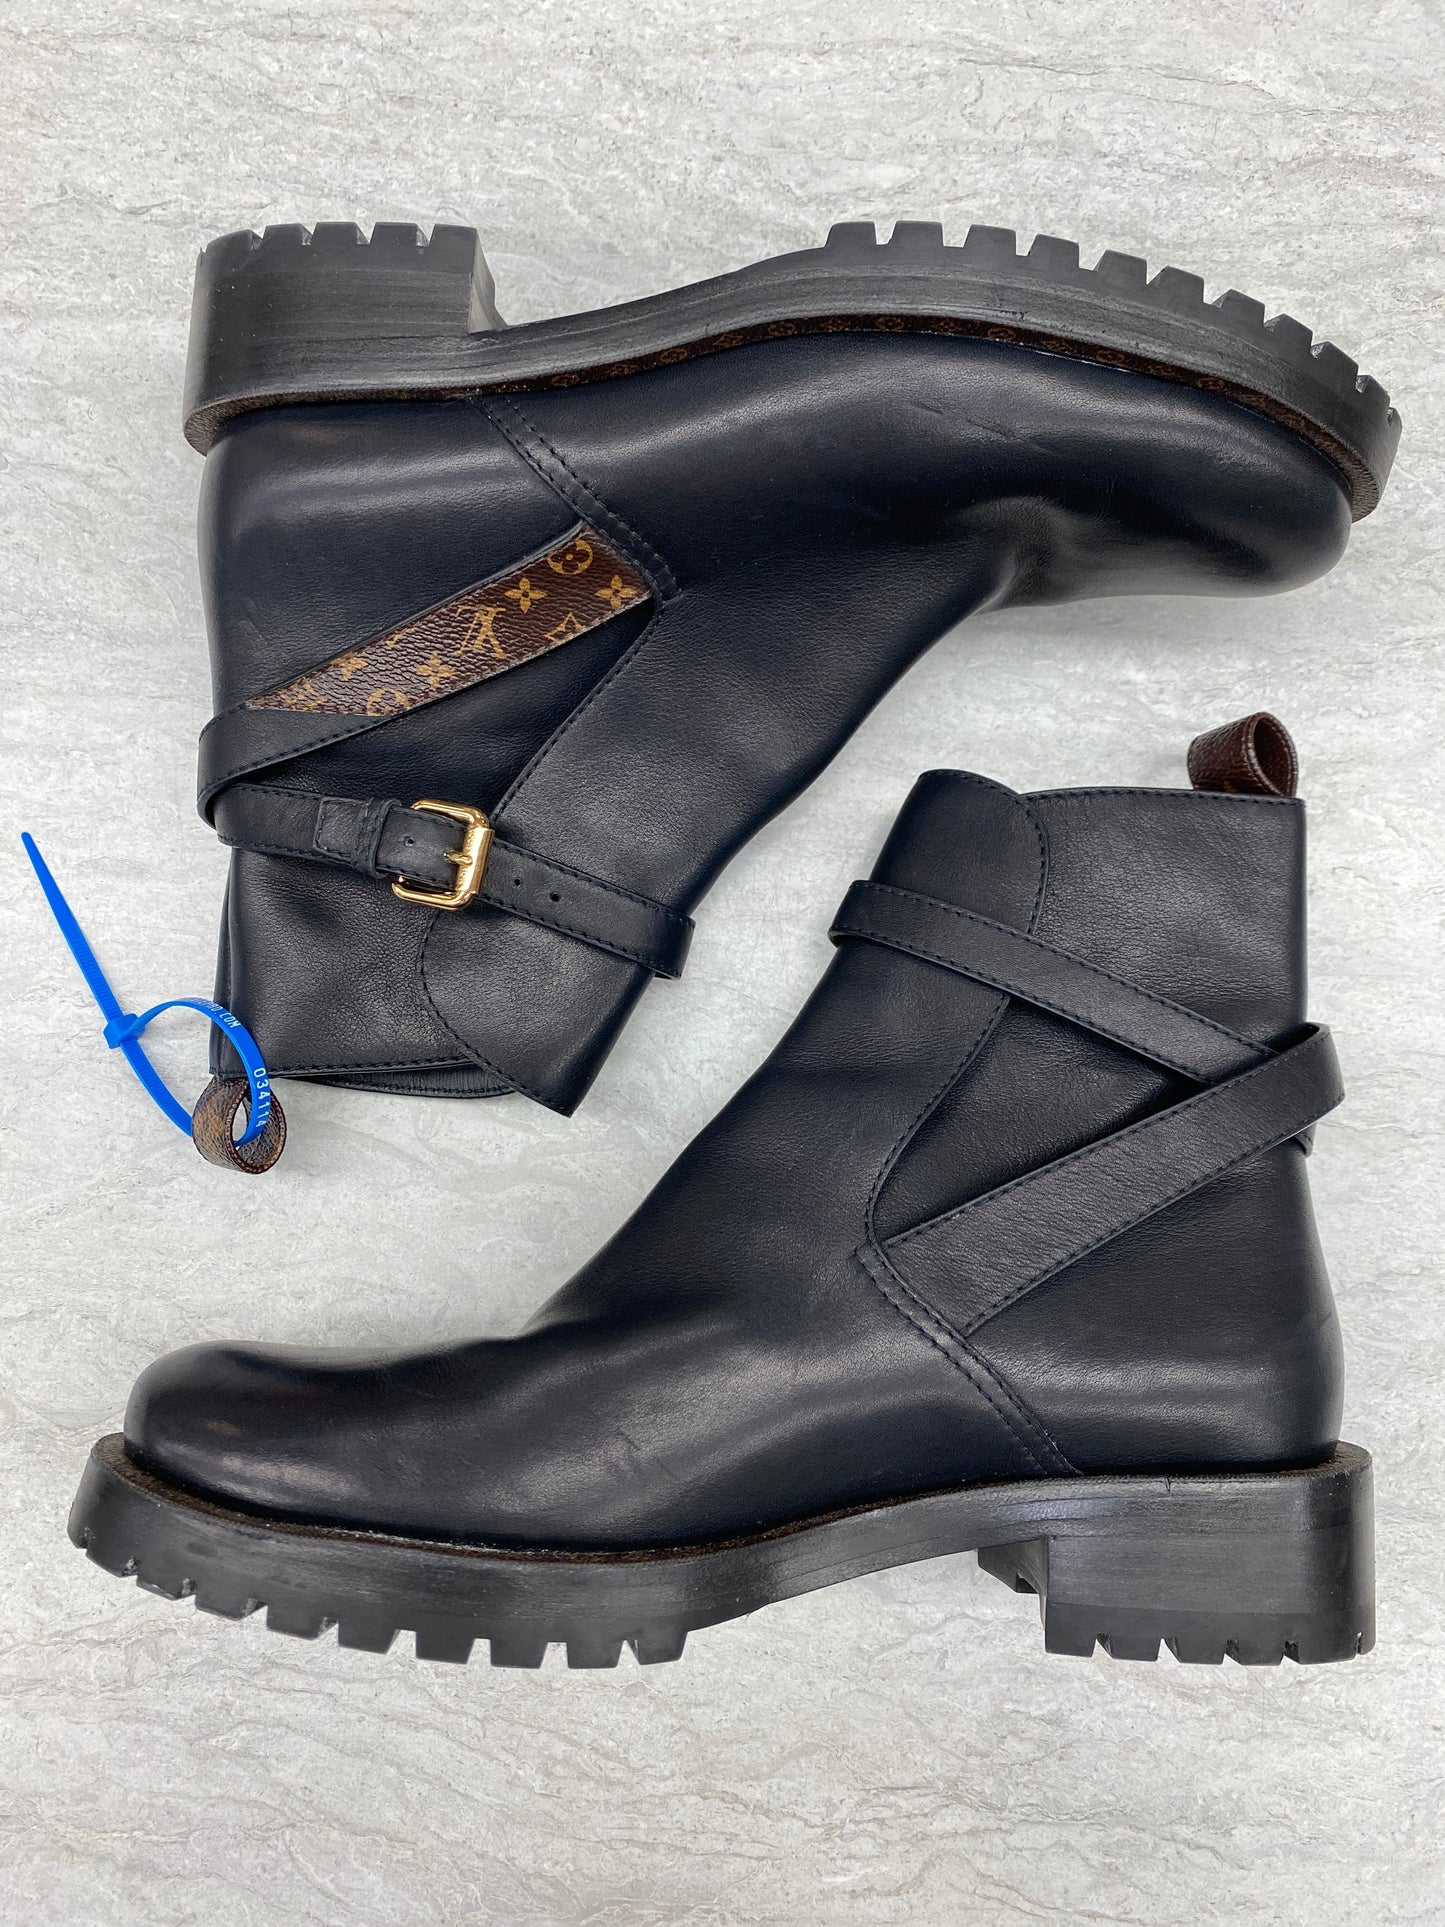 Black Boots Luxury Designer Louis Vuitton, Size 8.5